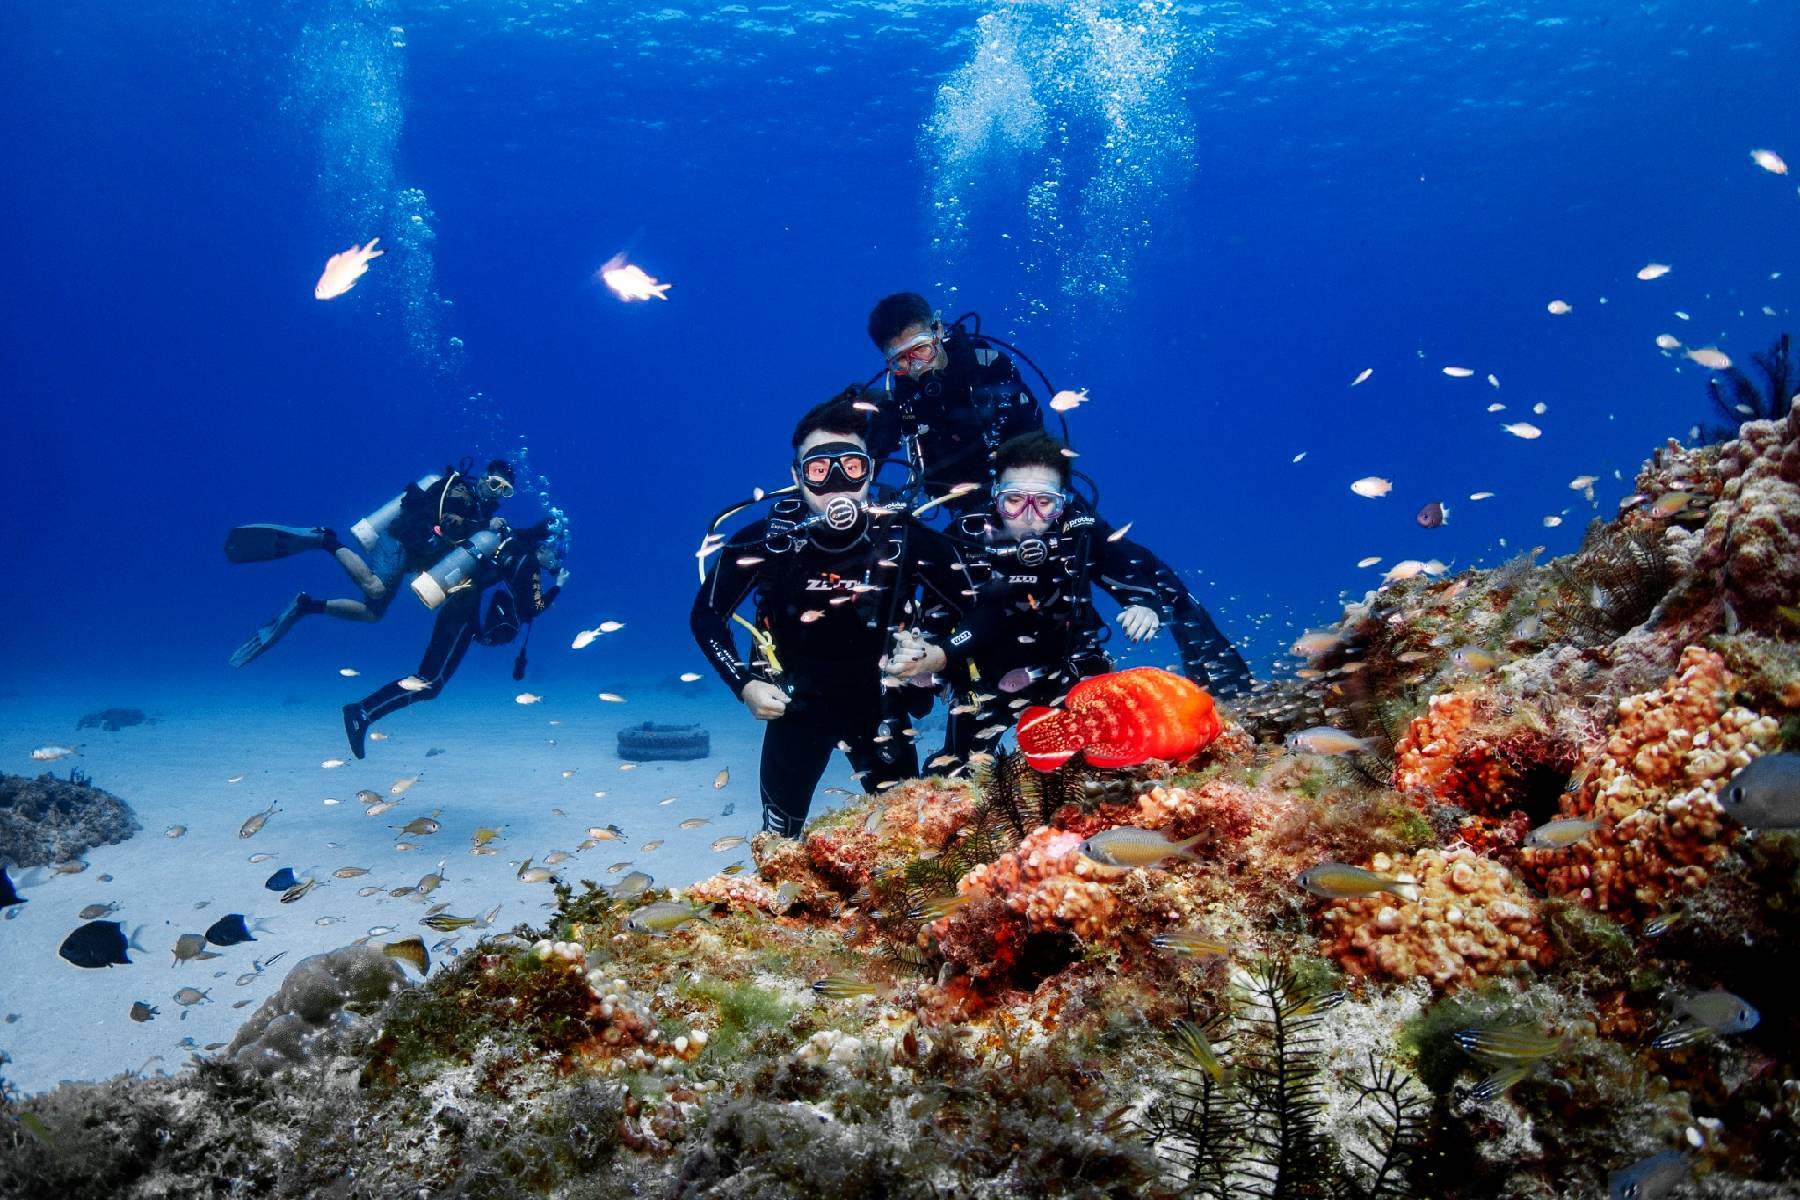 ○小琉球琉影潛水-潛水單人體驗券※贈送水底攝影12